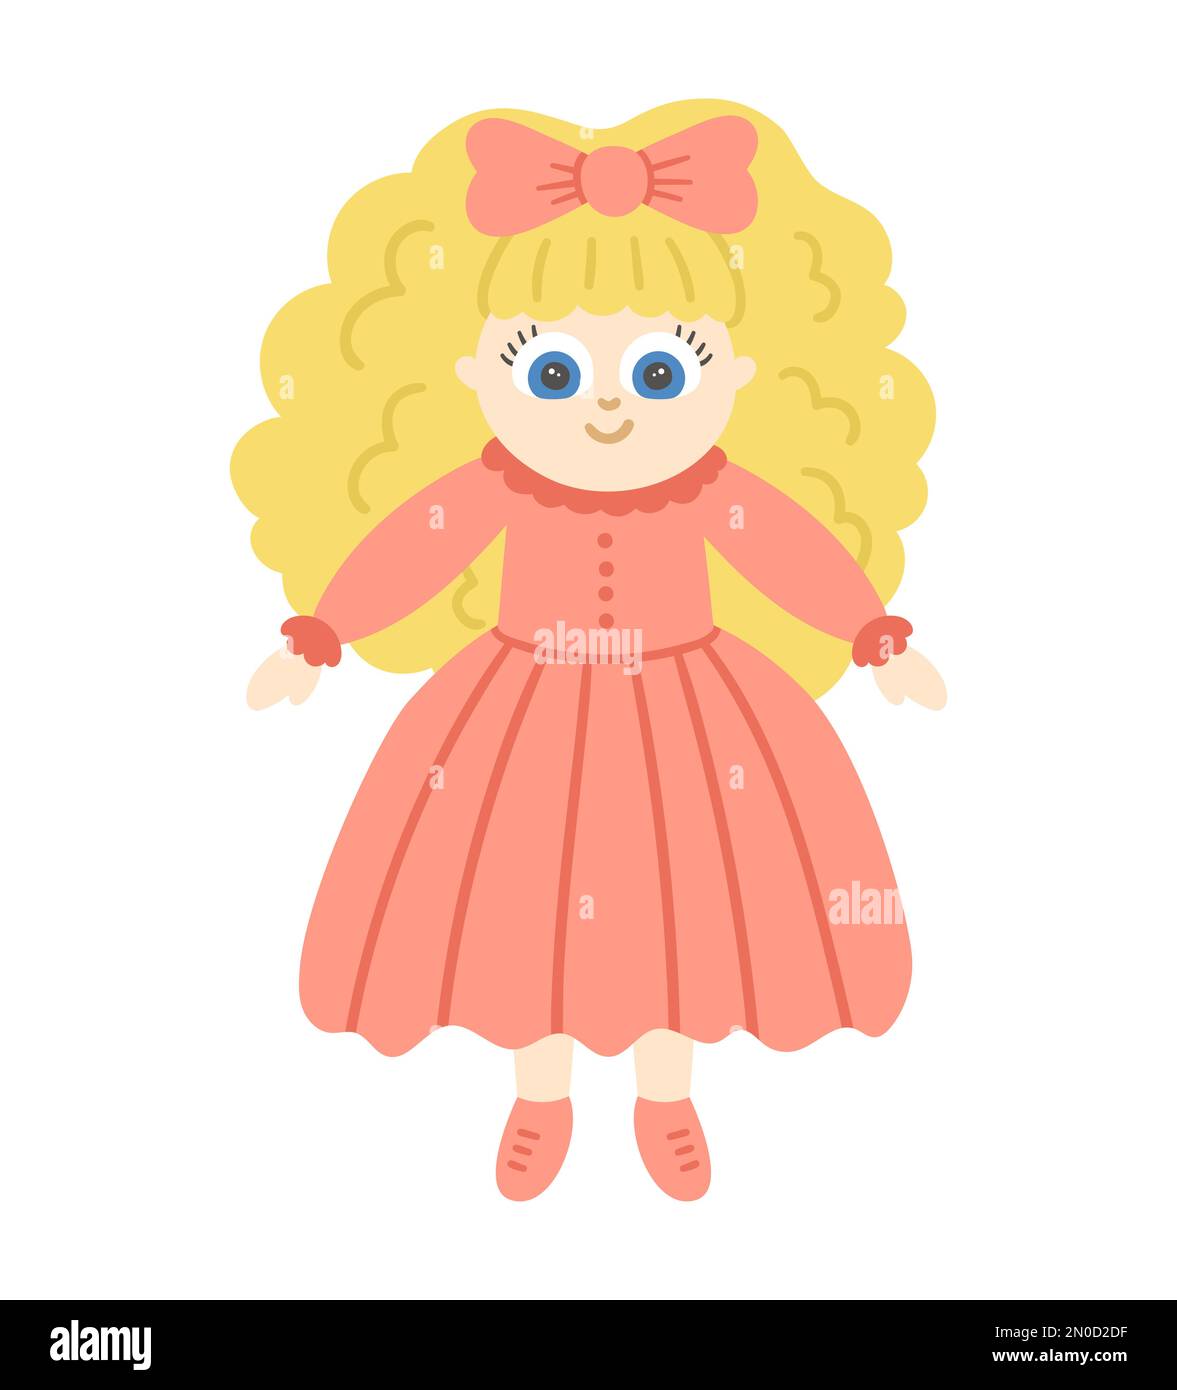 Poupée vectorielle isolée sur fond blanc. Adorable jouet fille avec cheveux blonds dans la robe rose illustration pour les enfants. Drôle de personnage souriant pour les enfants Illustration de Vecteur